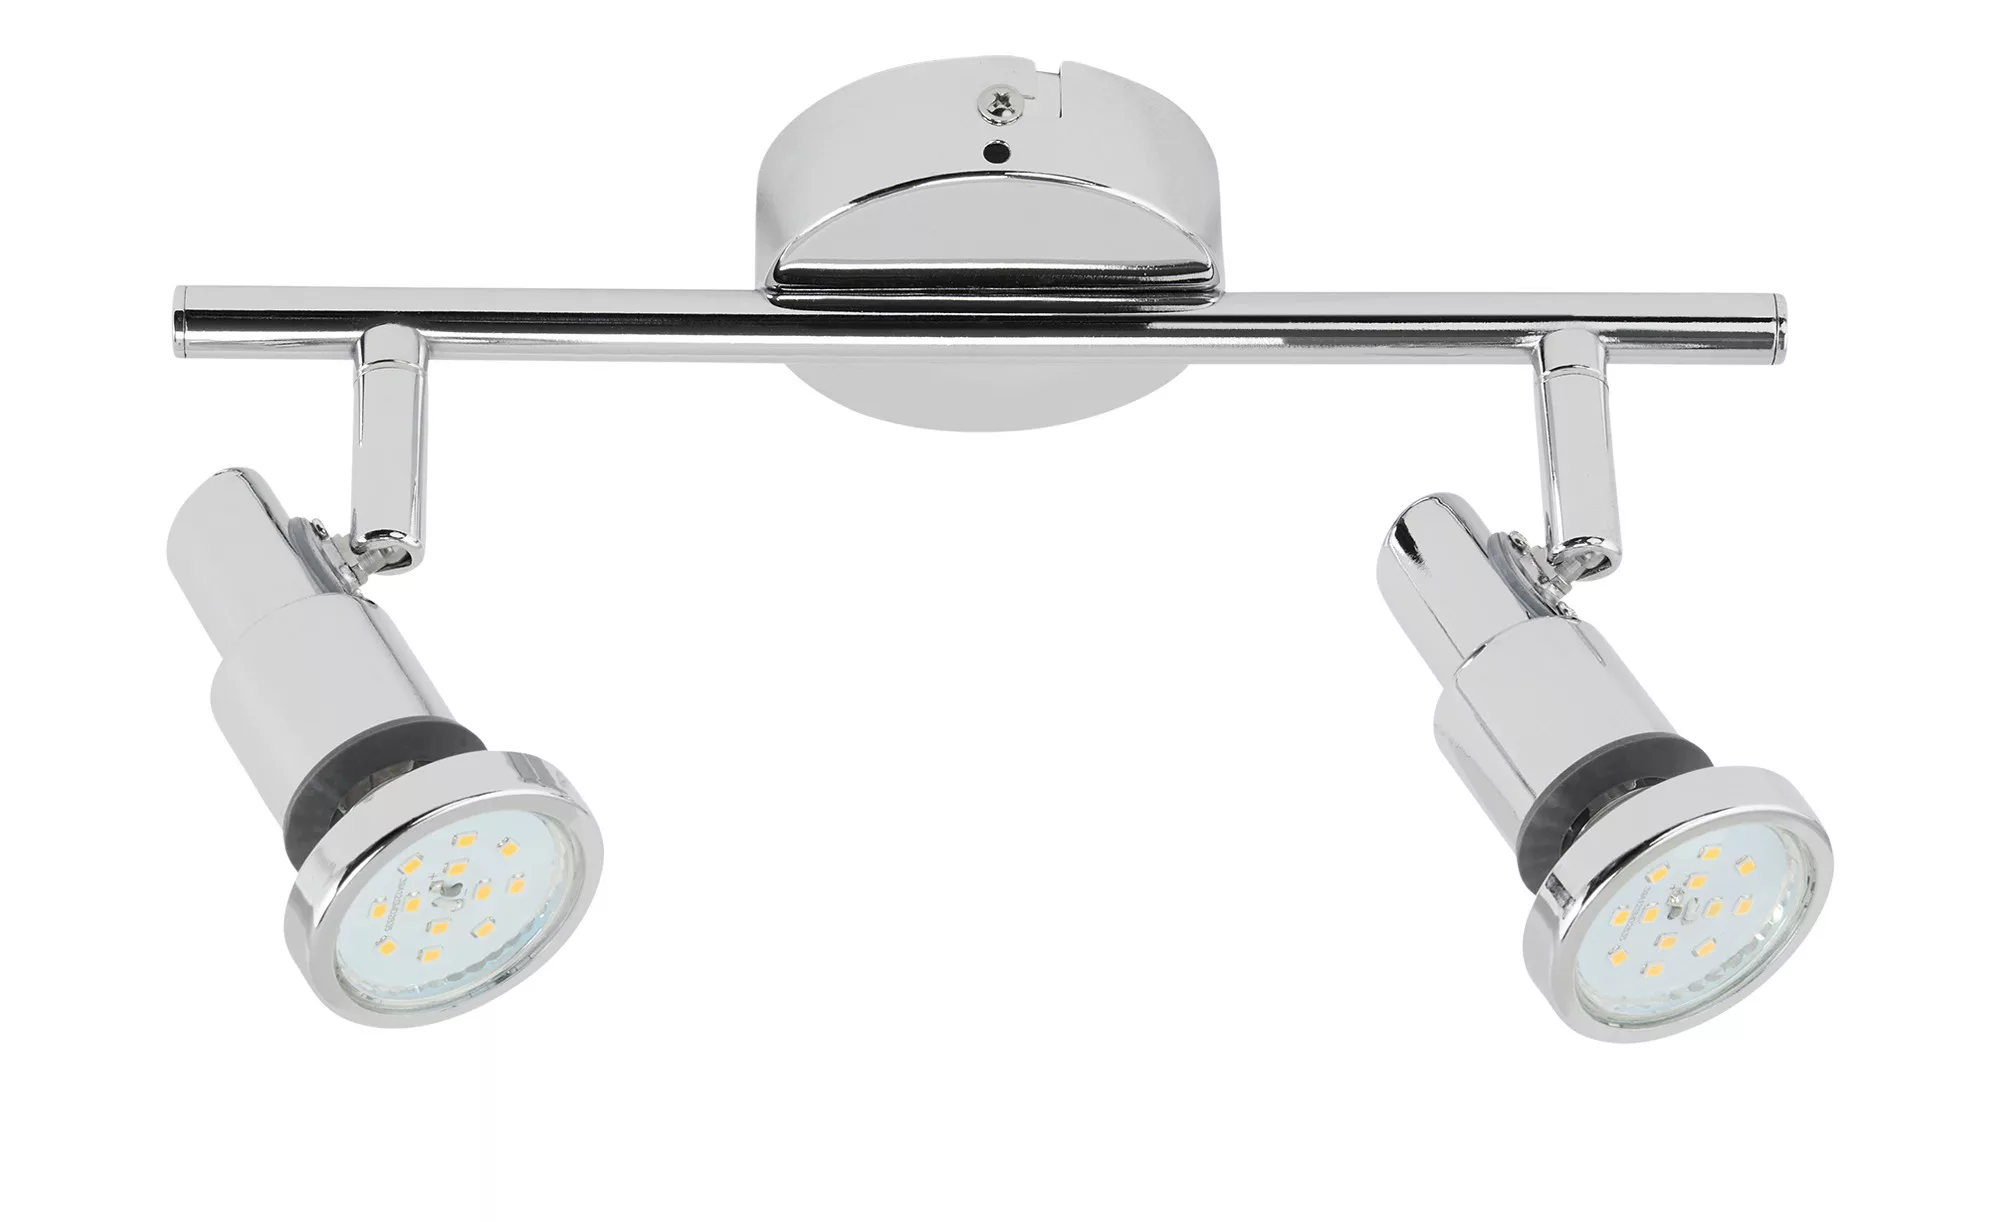 LED-Badspot, 2-flammig, chrom - silber - 8 cm - 12,3 cm - Lampen & Leuchten günstig online kaufen